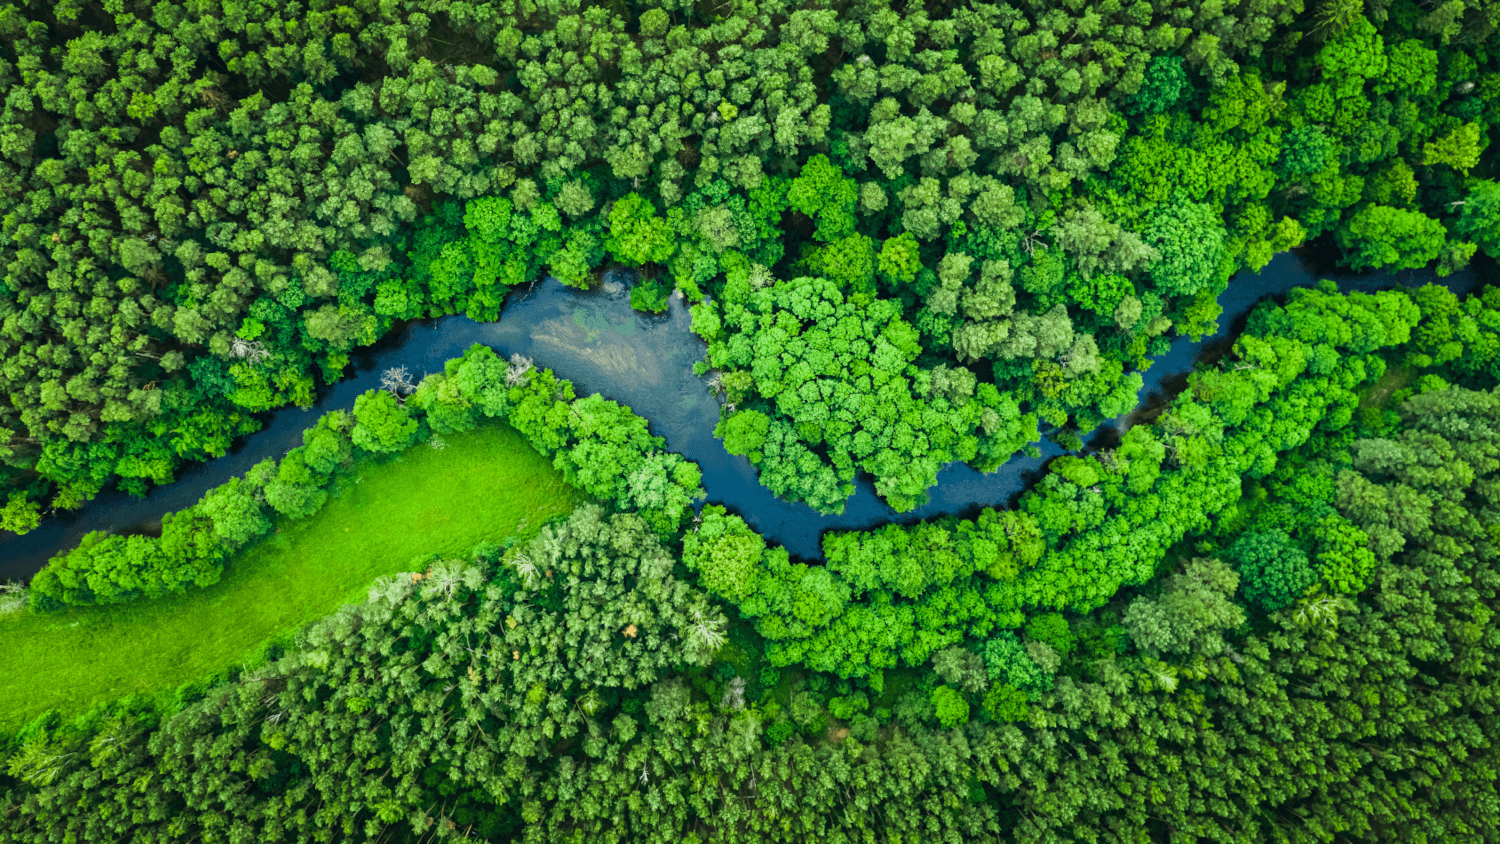 River running through rainforest